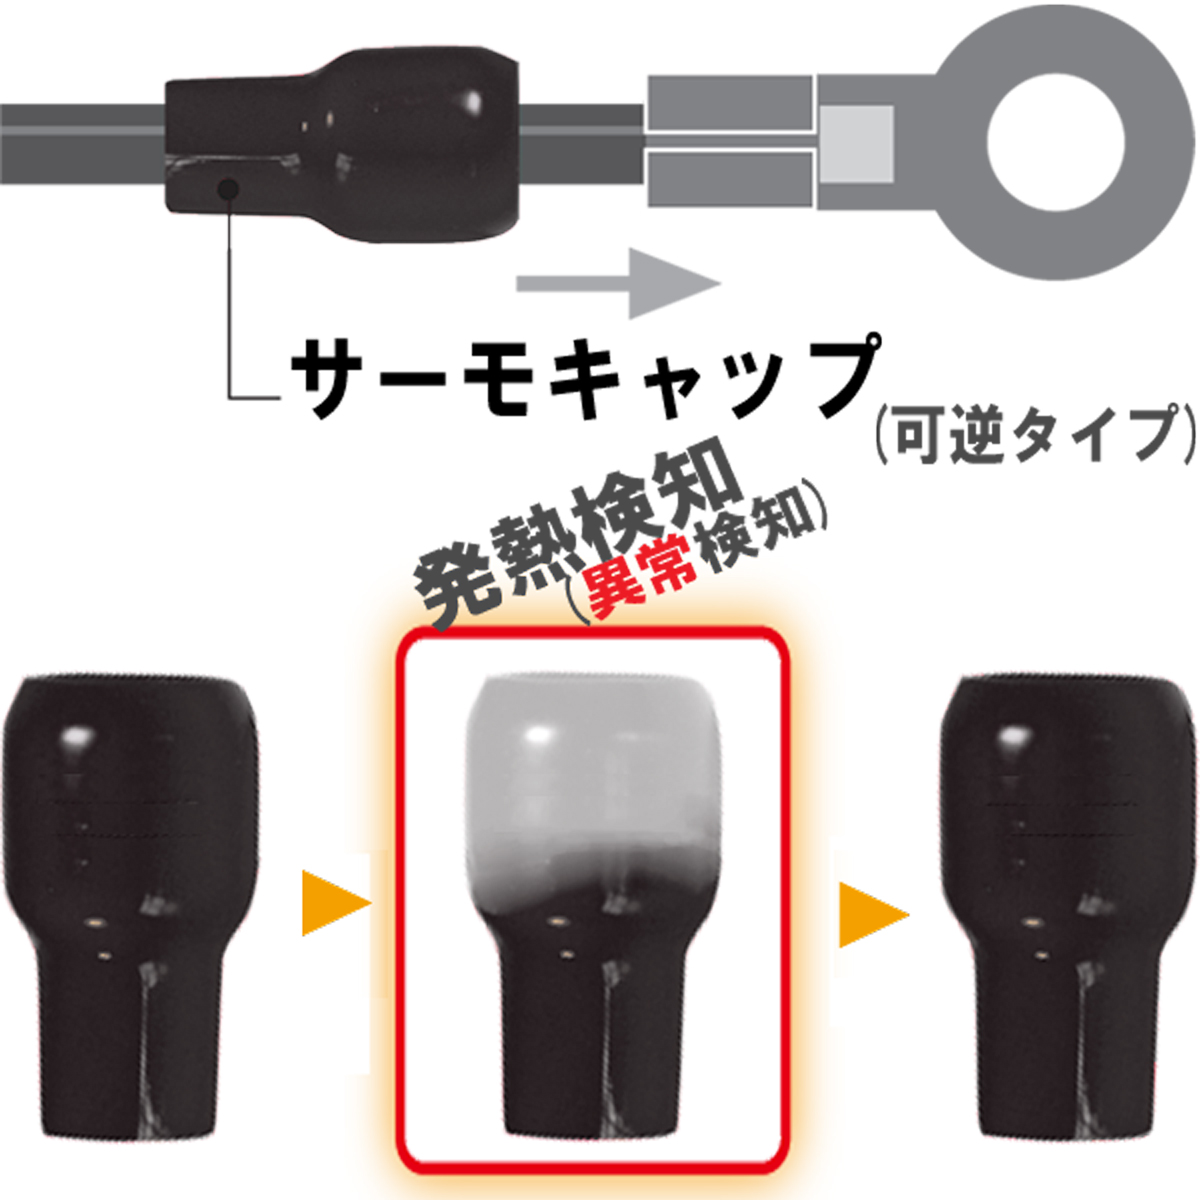 発熱監視用絶縁端子キャップ サーモキャップ MTC-150-黒 | inaba_jappy